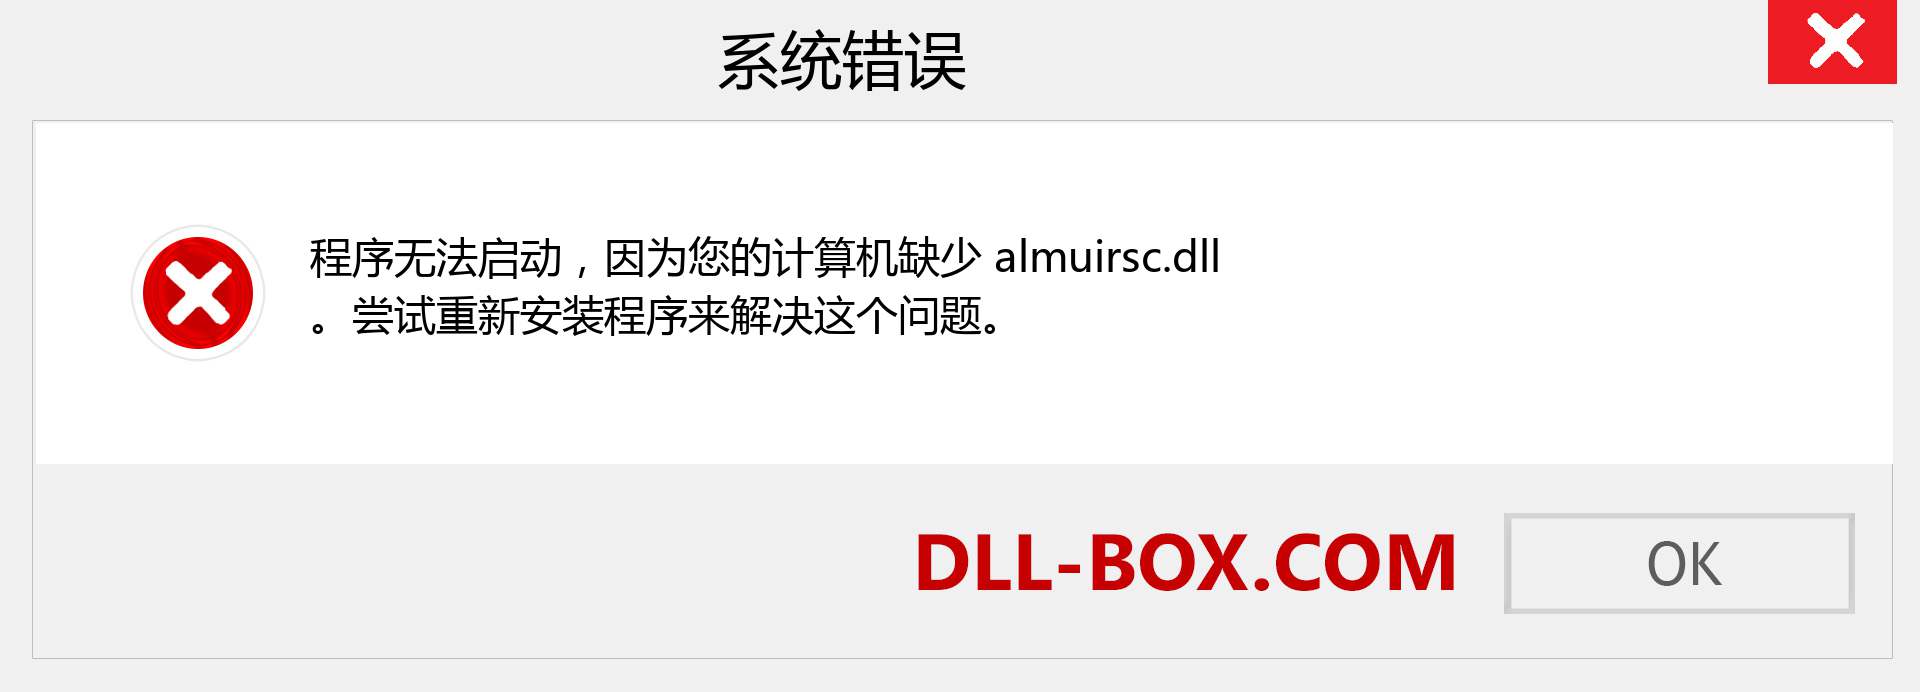 almuirsc.dll 文件丢失？。 适用于 Windows 7、8、10 的下载 - 修复 Windows、照片、图像上的 almuirsc dll 丢失错误